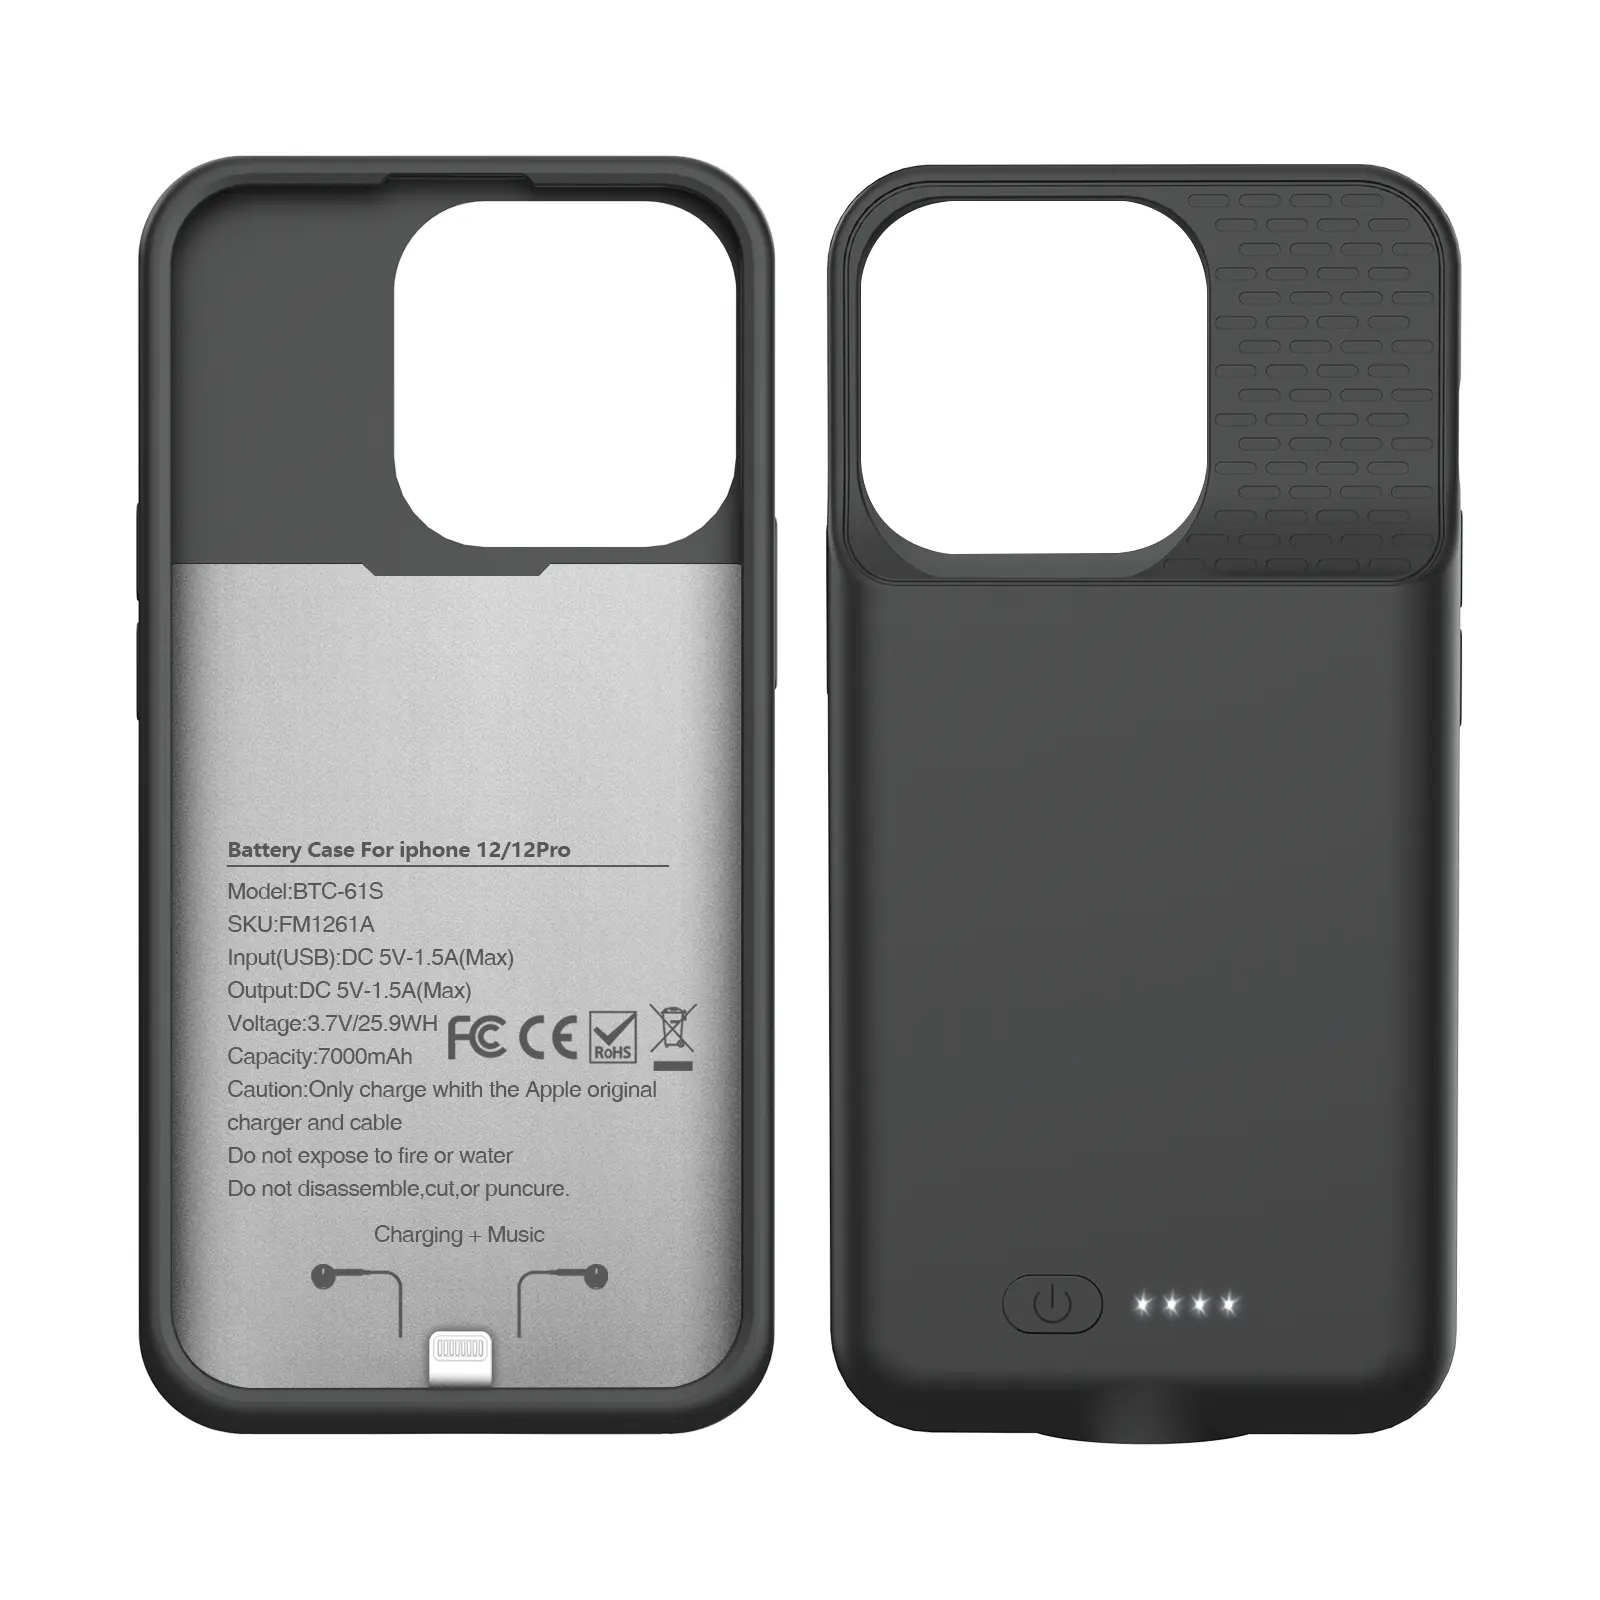 Casing pengisi daya baterai ponsel eksternal portabel, casing Paket power bank pengisi daya ponsel eksternal portabel 7000mAh untuk iPhone 12/12pro